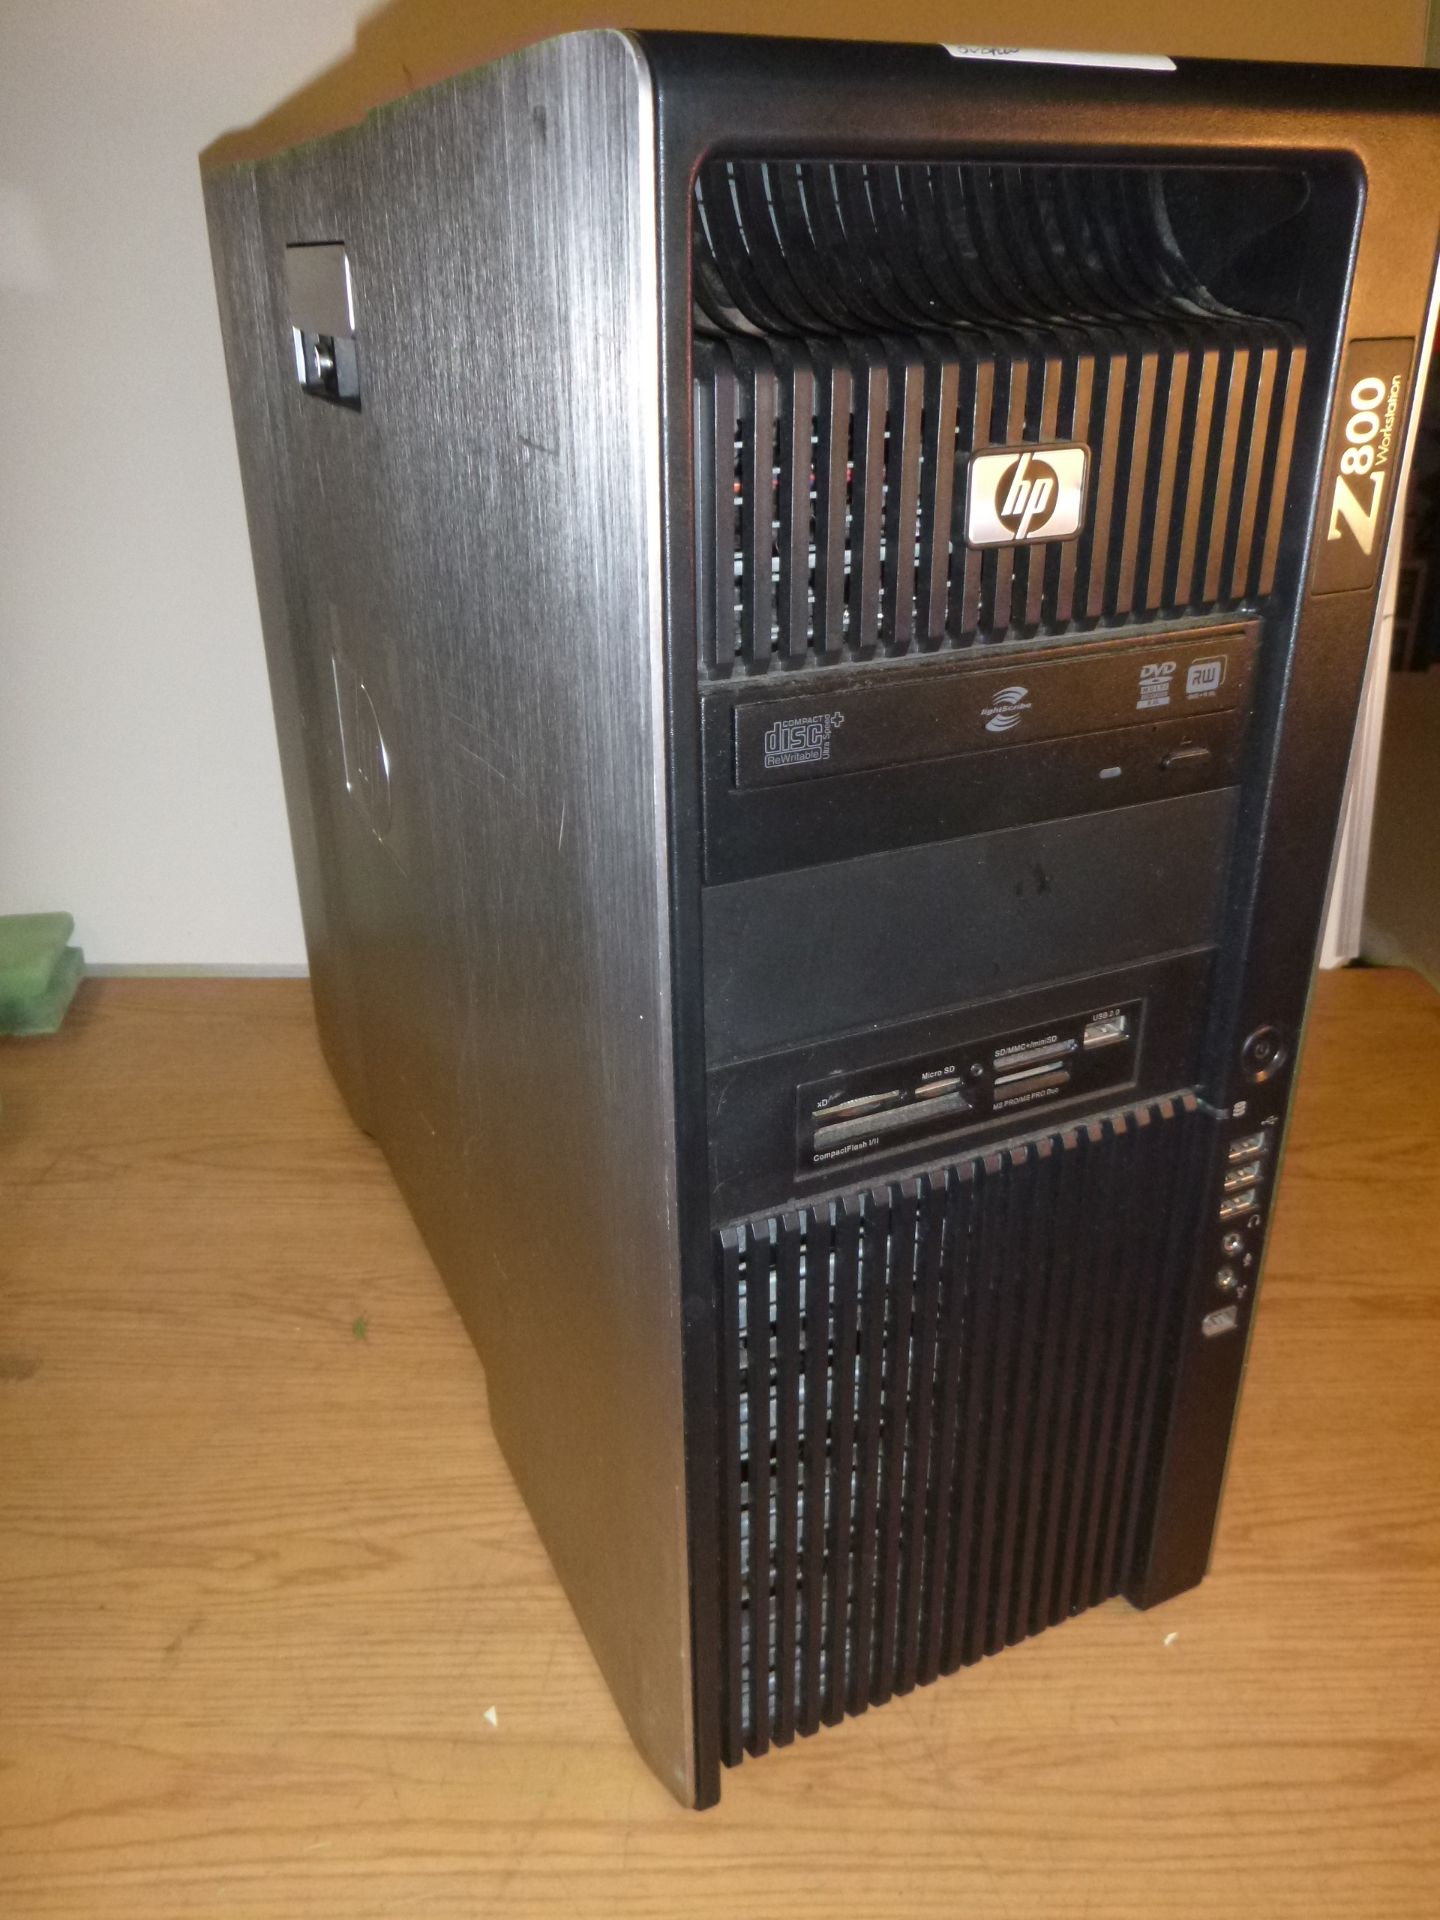 HP Z800 WORKSTATION. XEON QUAD CORE 2.67GHZ PROCESSOR, 12GB RAM, 500GB HDD, CARDREADER, DVDRW. W7